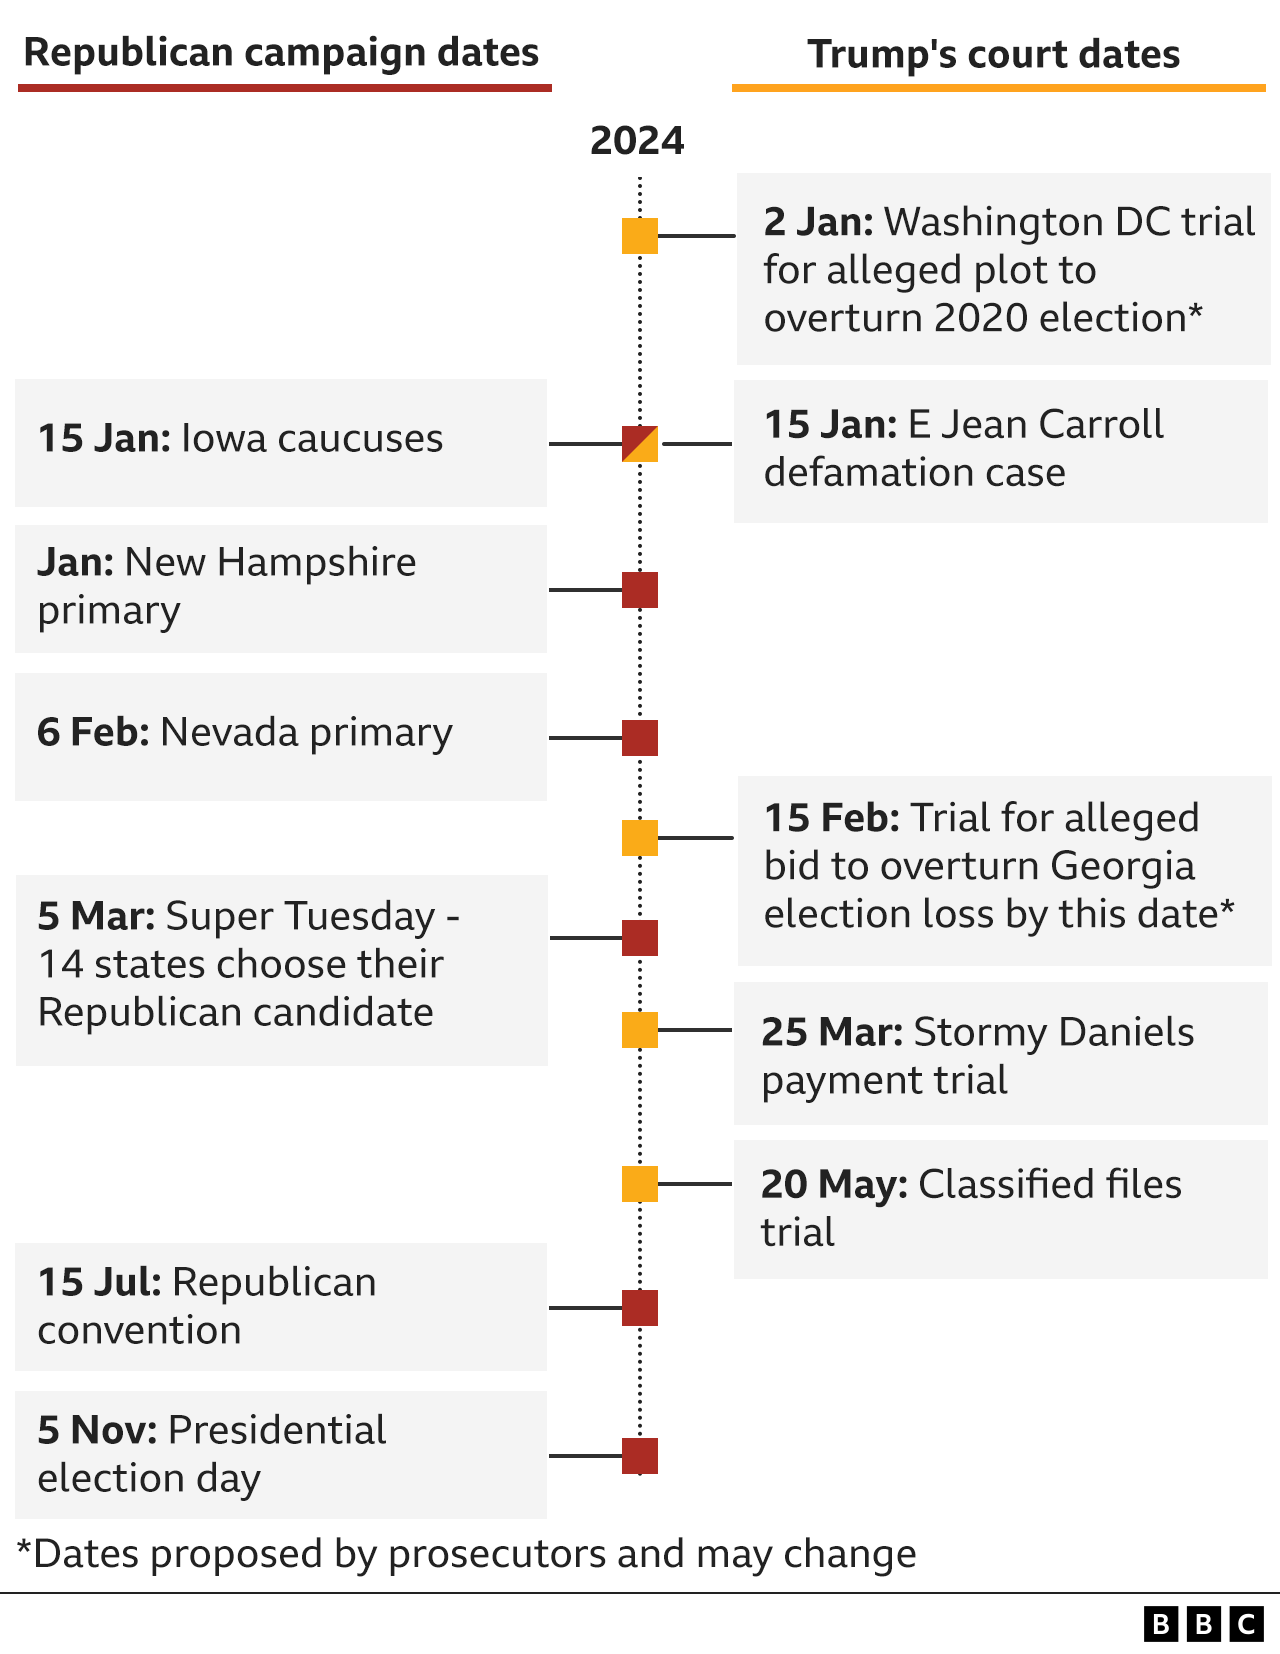 Timeline of Trump trials v election dates